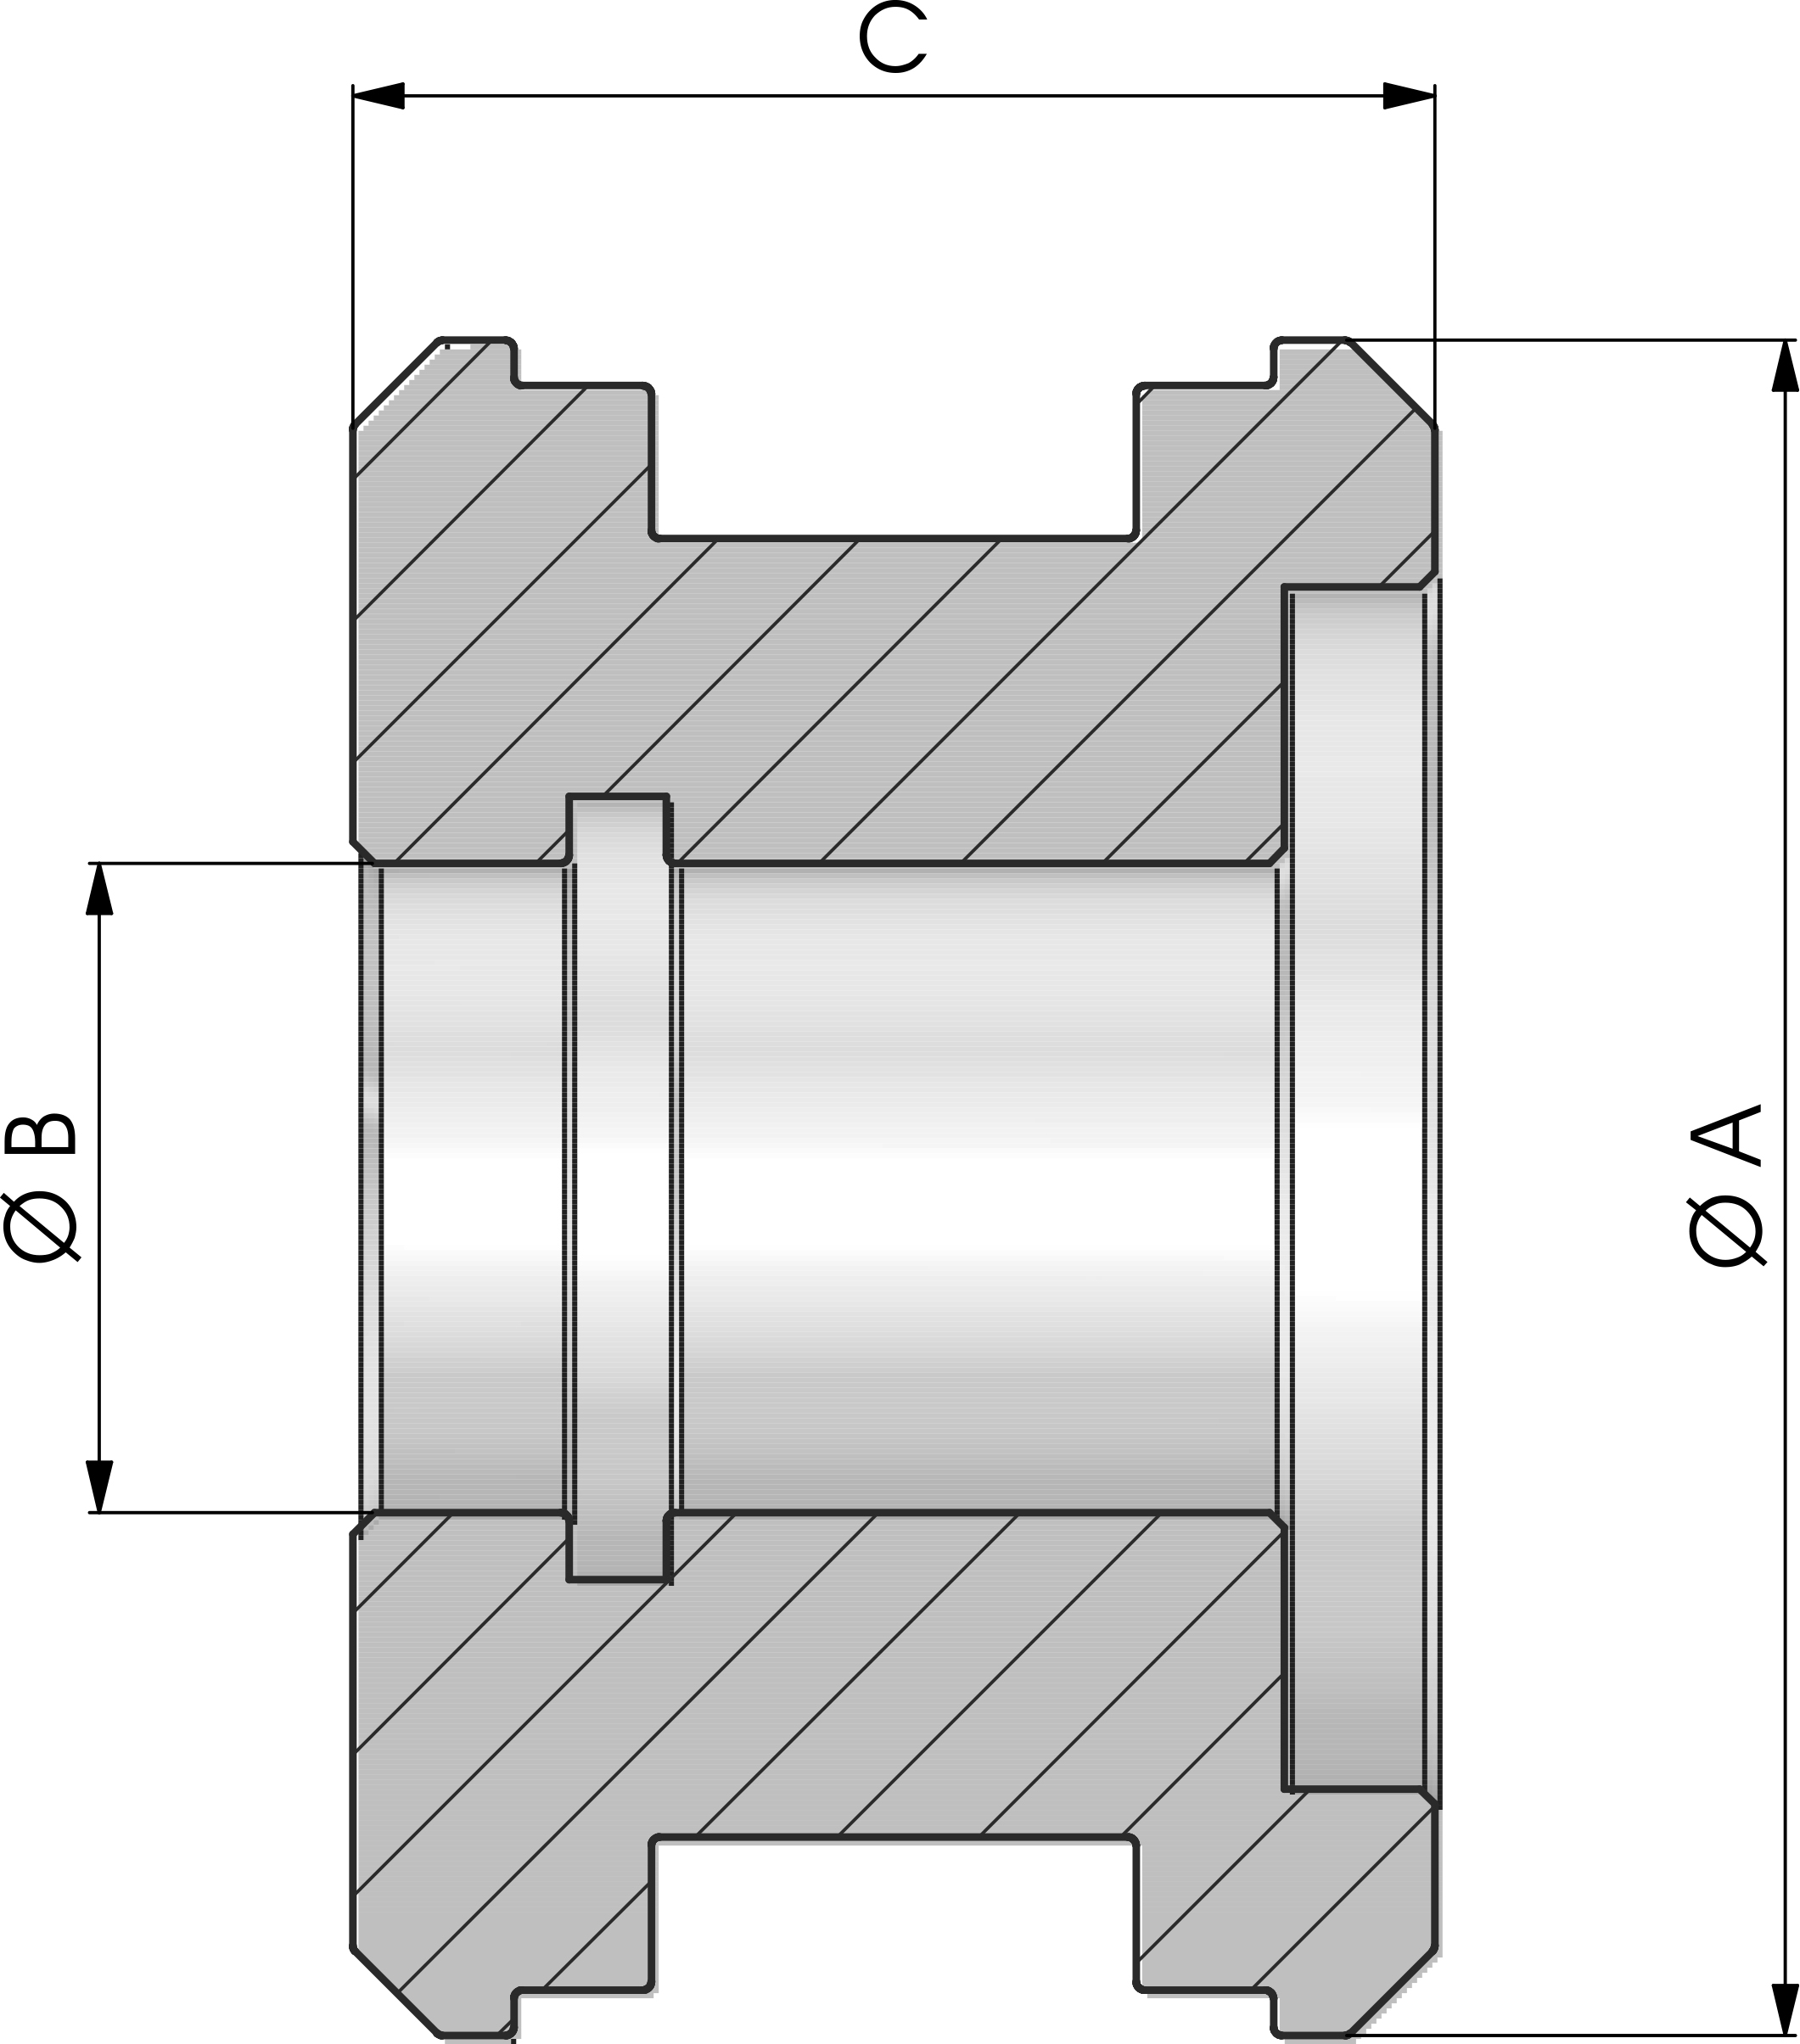 PISTÓN - Componentes para cilindros